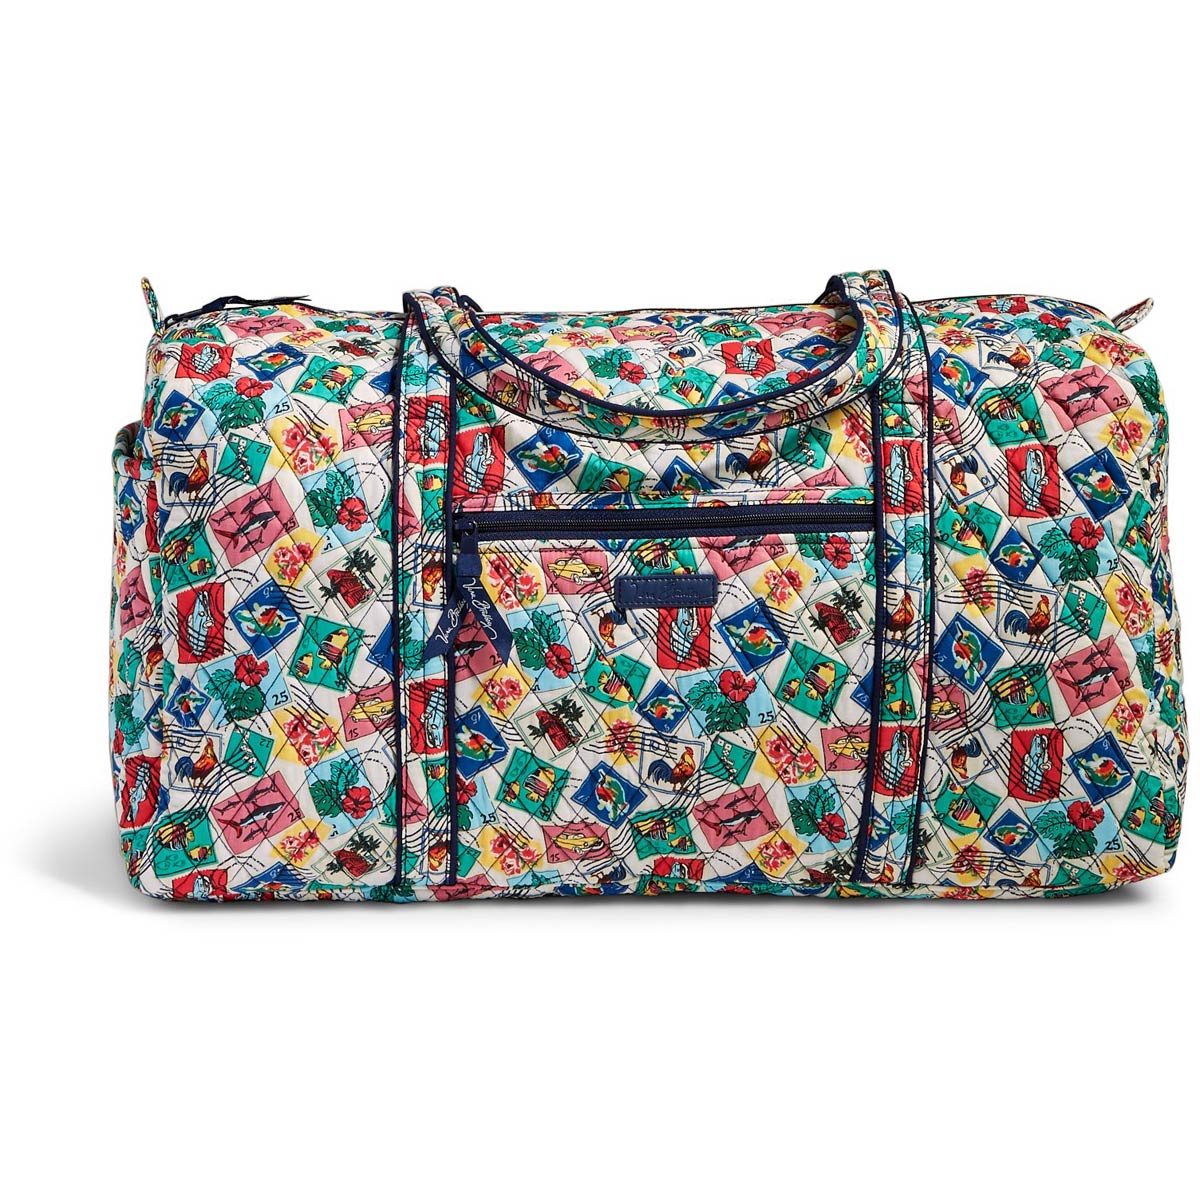 Shop Vera Bradley XL Duffel Travel Bag - Lila – Luggage Factory